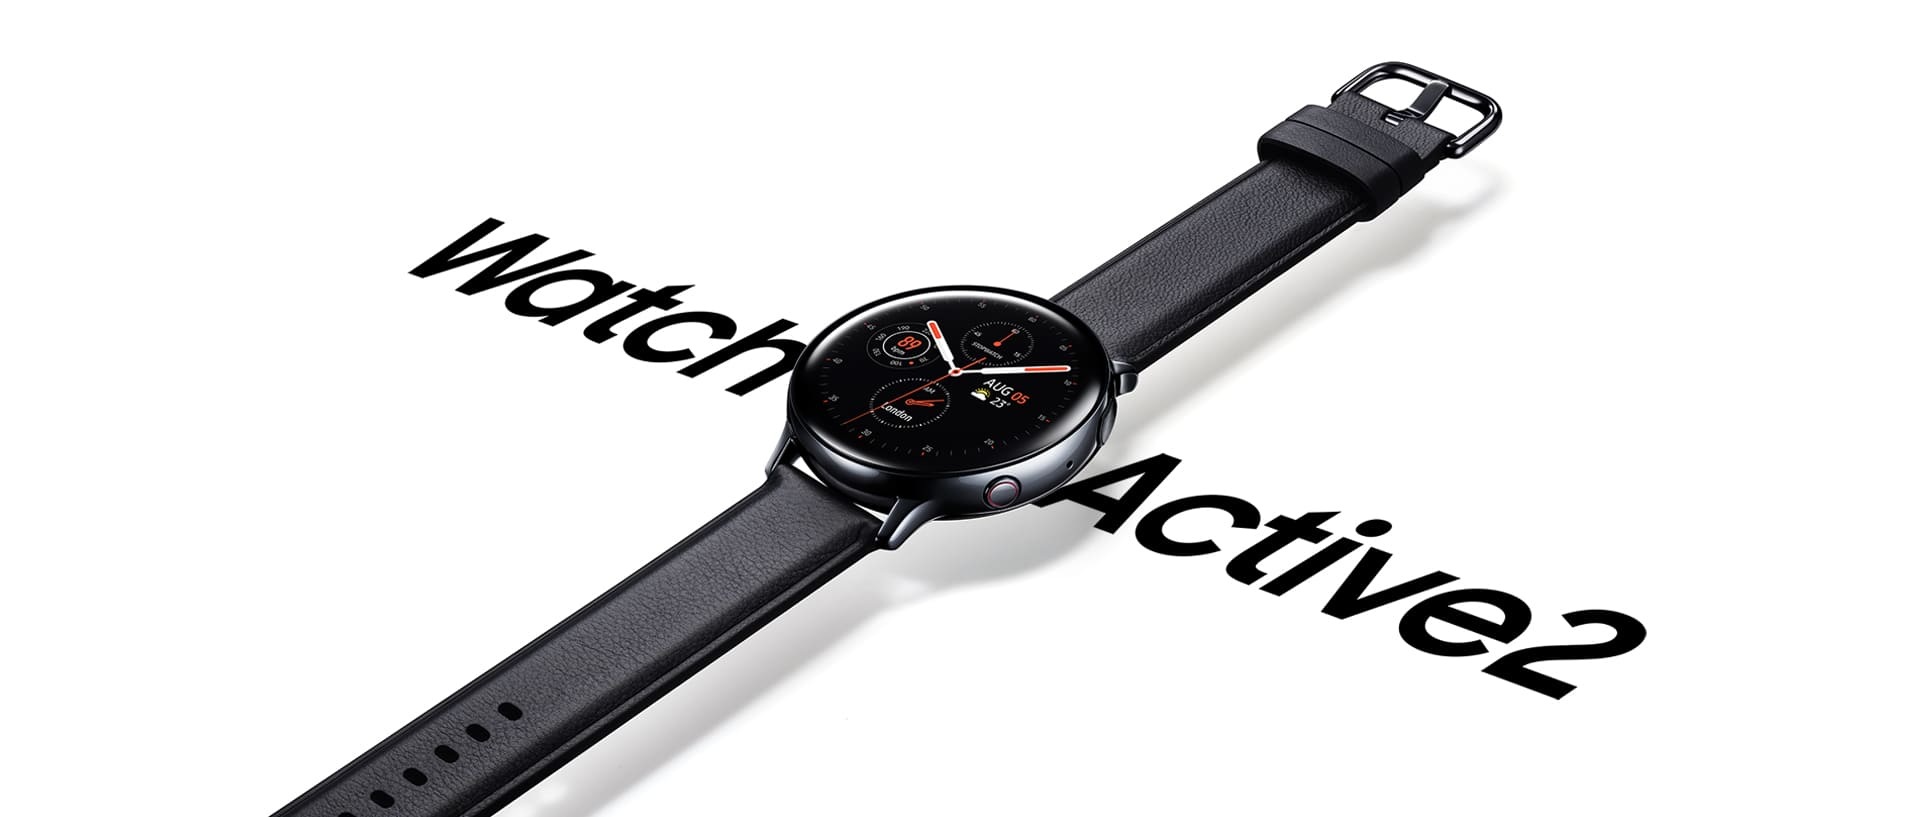 Une Galaxy Watch Active2 en acier noir avec un bracelet en cuir noir suspendue au-dessus des mots « Watch Active 2 » écrits en gros.